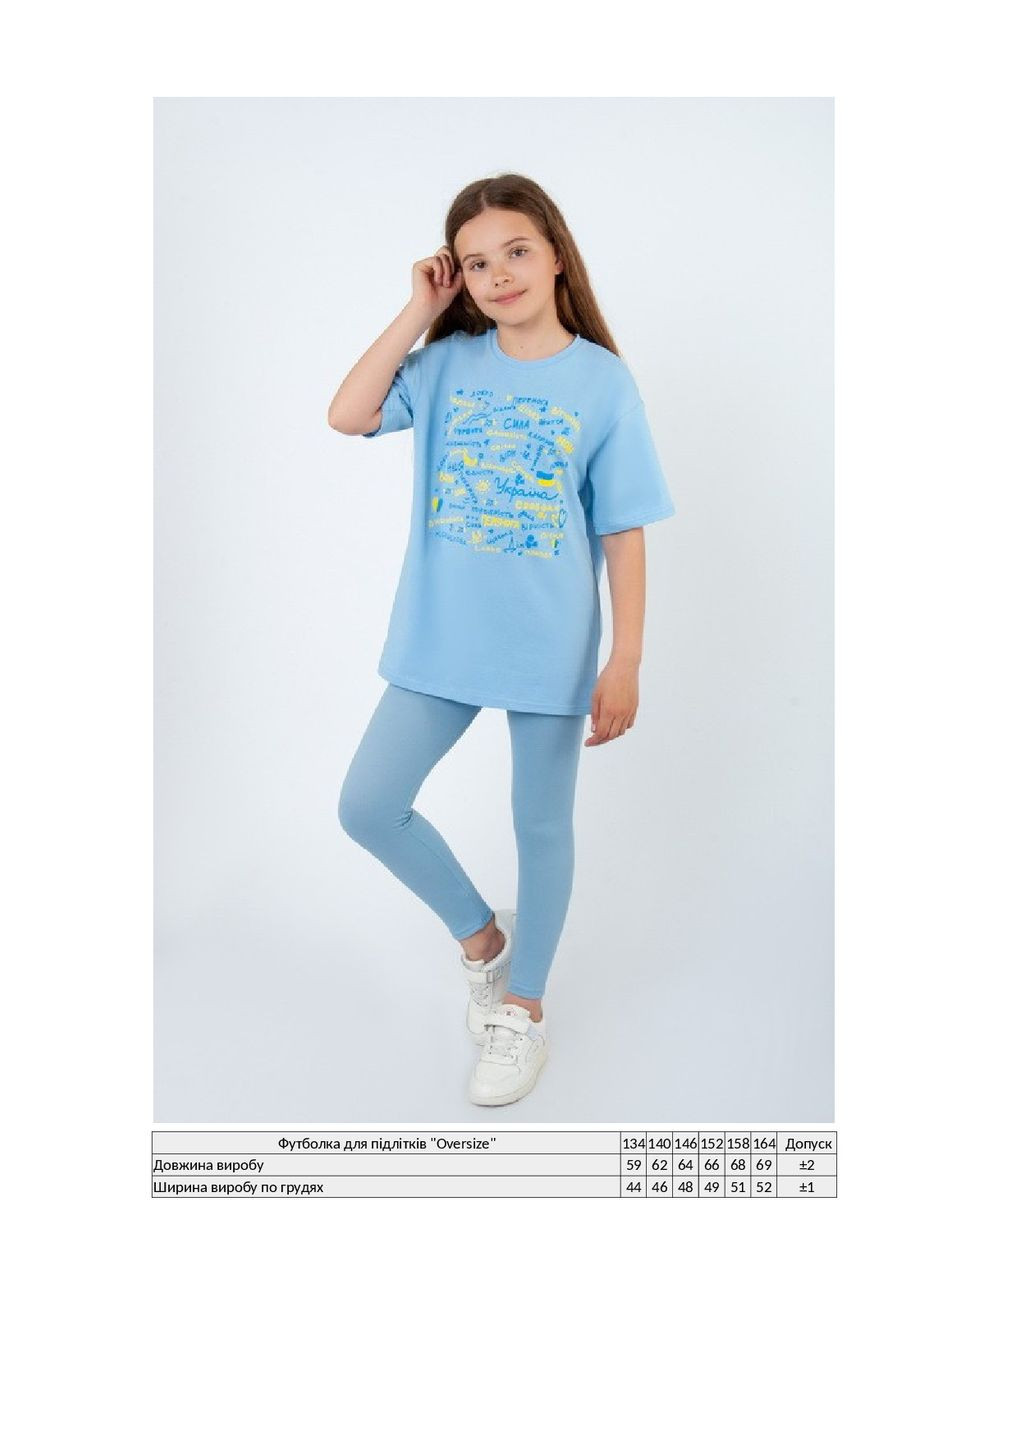 Голубая летняя футболка подростковая "oversize" KINDER MODE